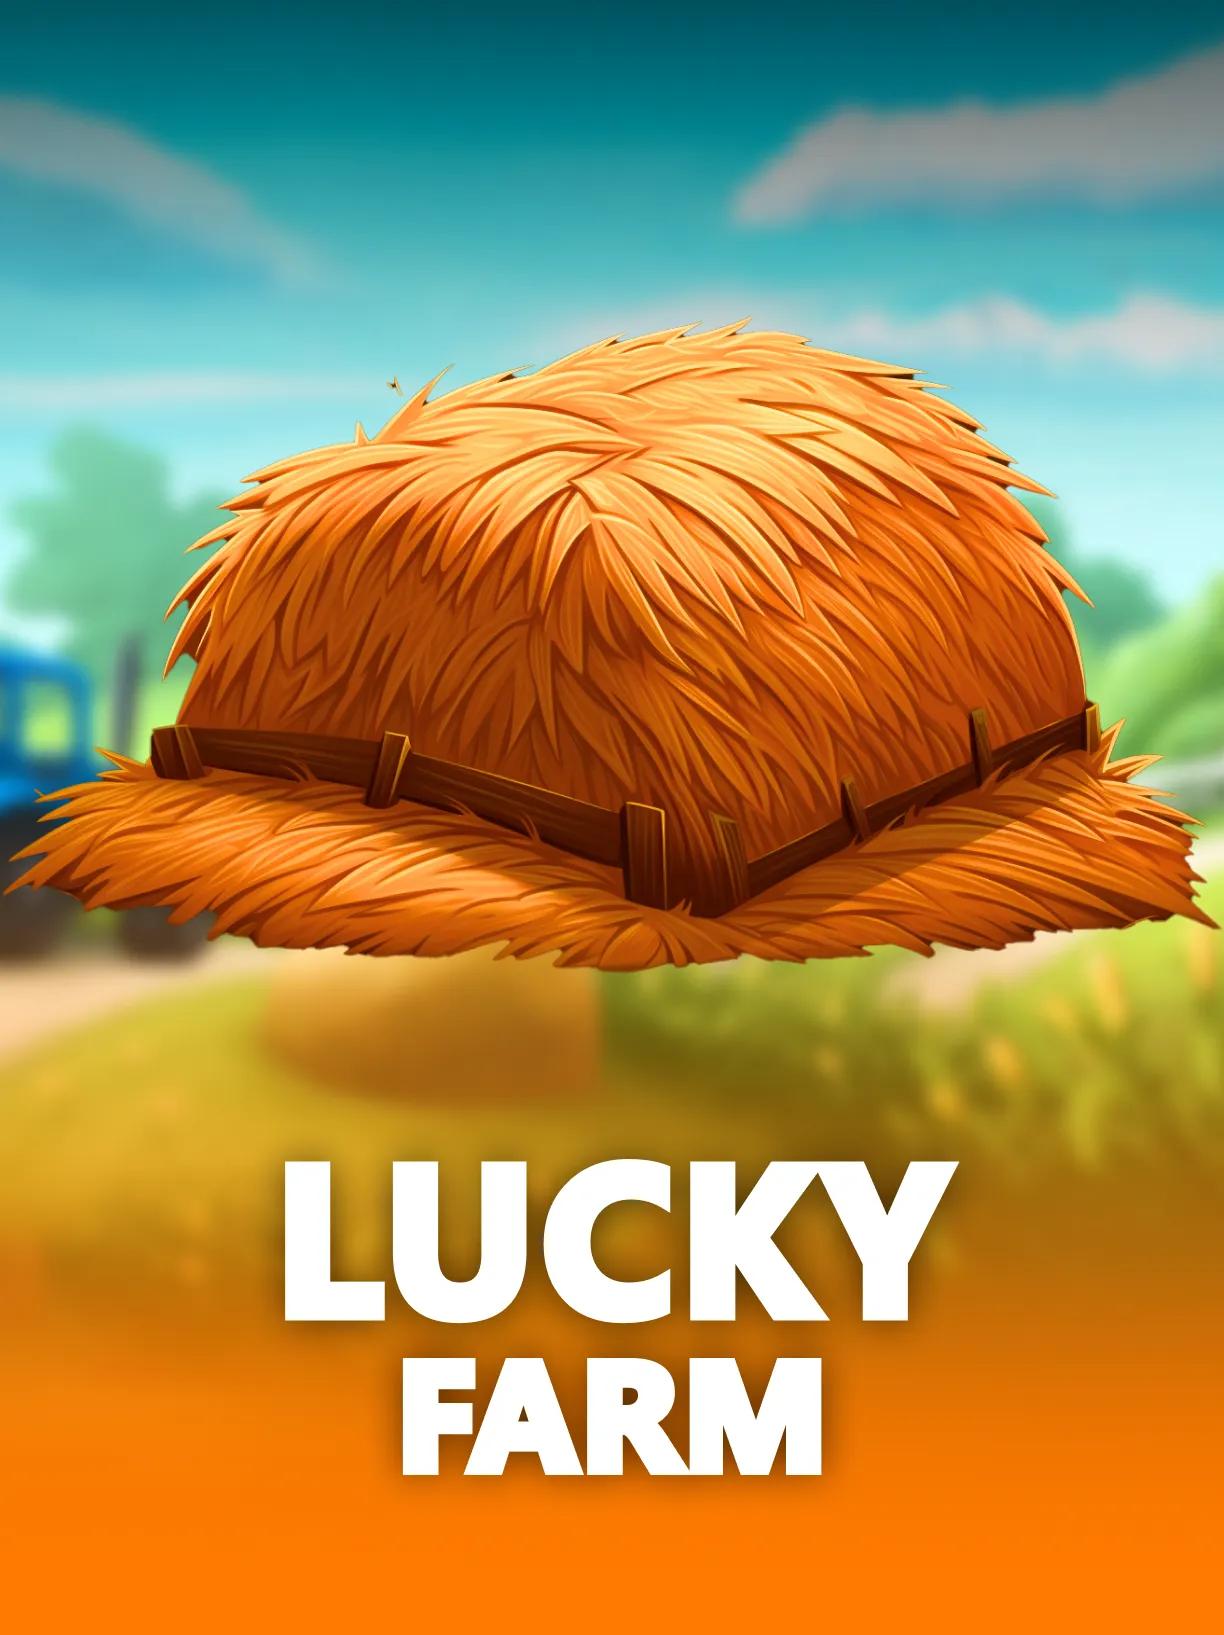 ug_Lucky_Farm_square.webp